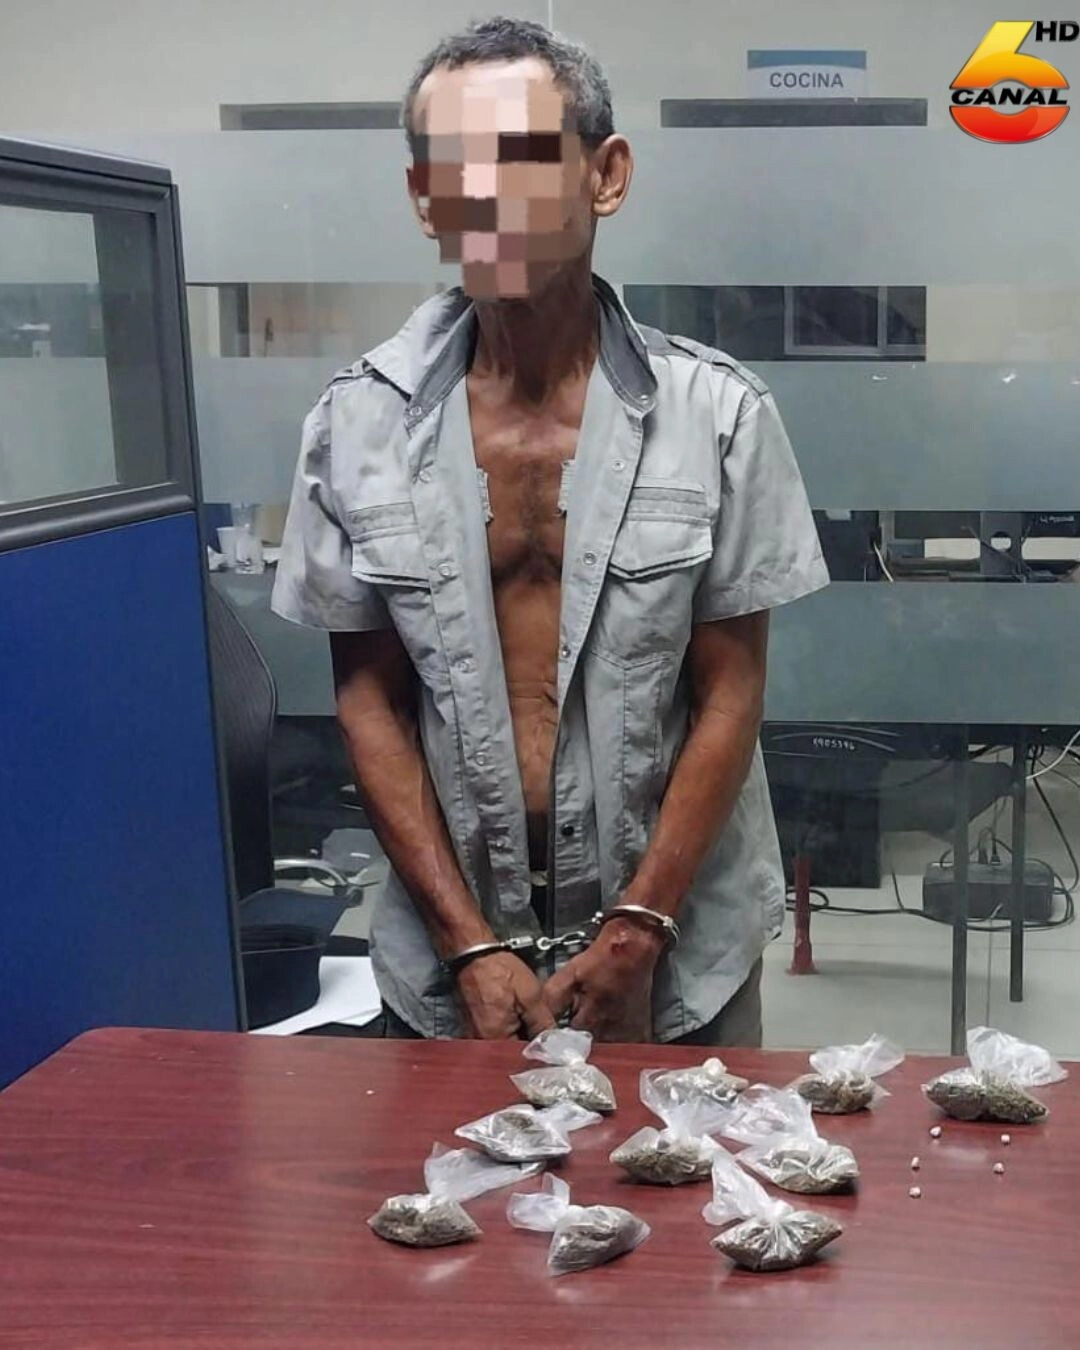 En posesión de supuesta droga fue capturado un sexagenario en La Másica, Atlántida02